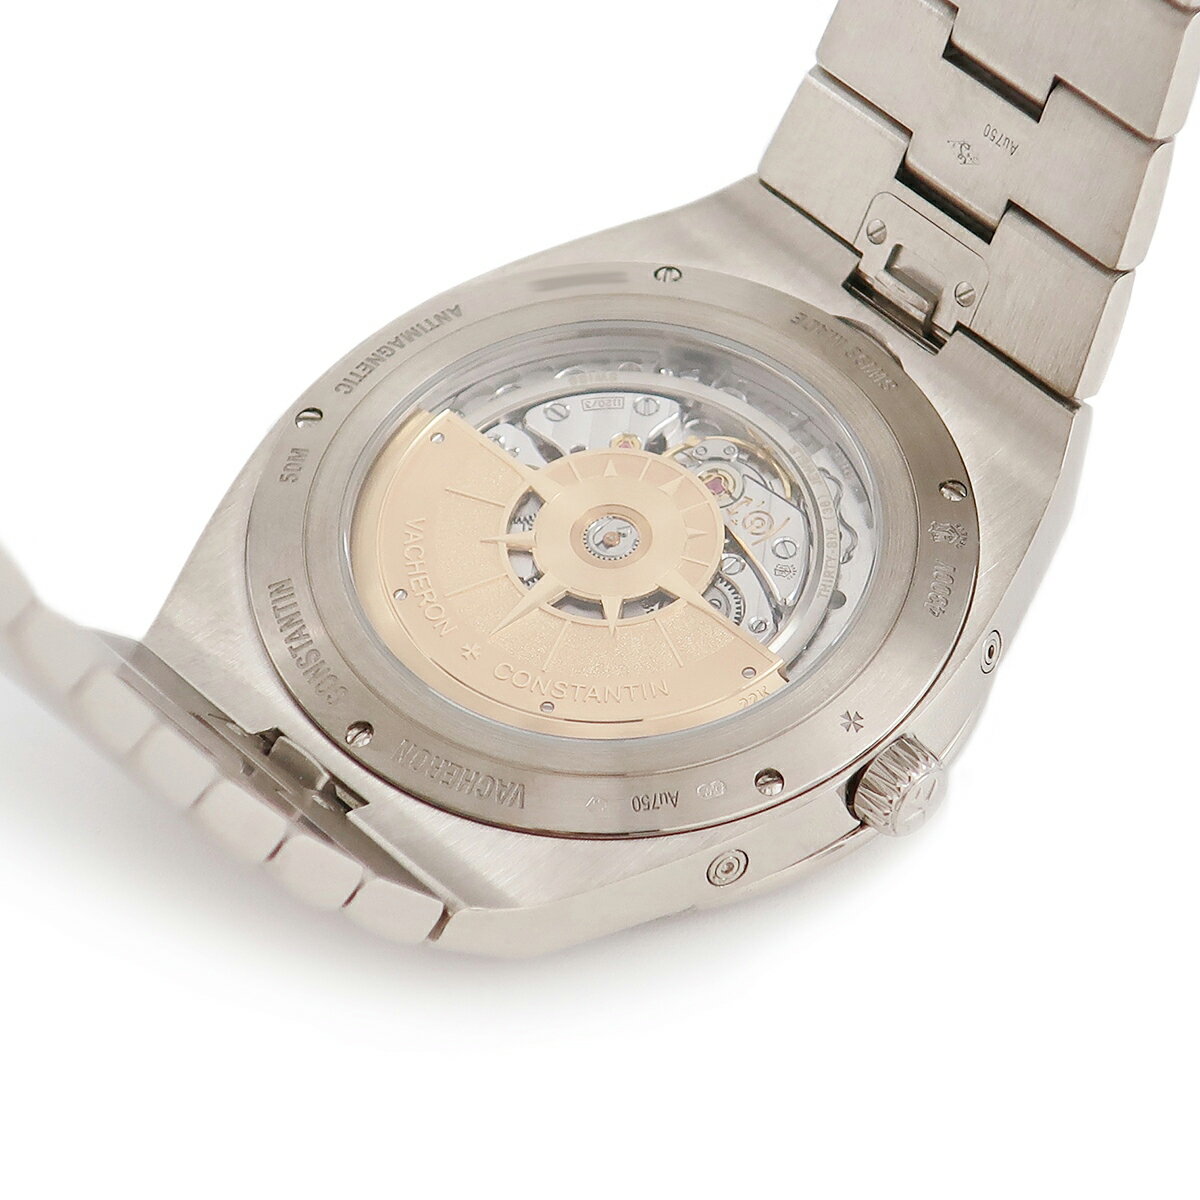 ヴァシュロン・コンスタンタン VACHERON CONSTANTIN オーヴァーシーズ パーペチュアル 4300V/120G-B102 K18WG無垢 薄型 メンズ 腕時計自動巻き グレー 【中古】